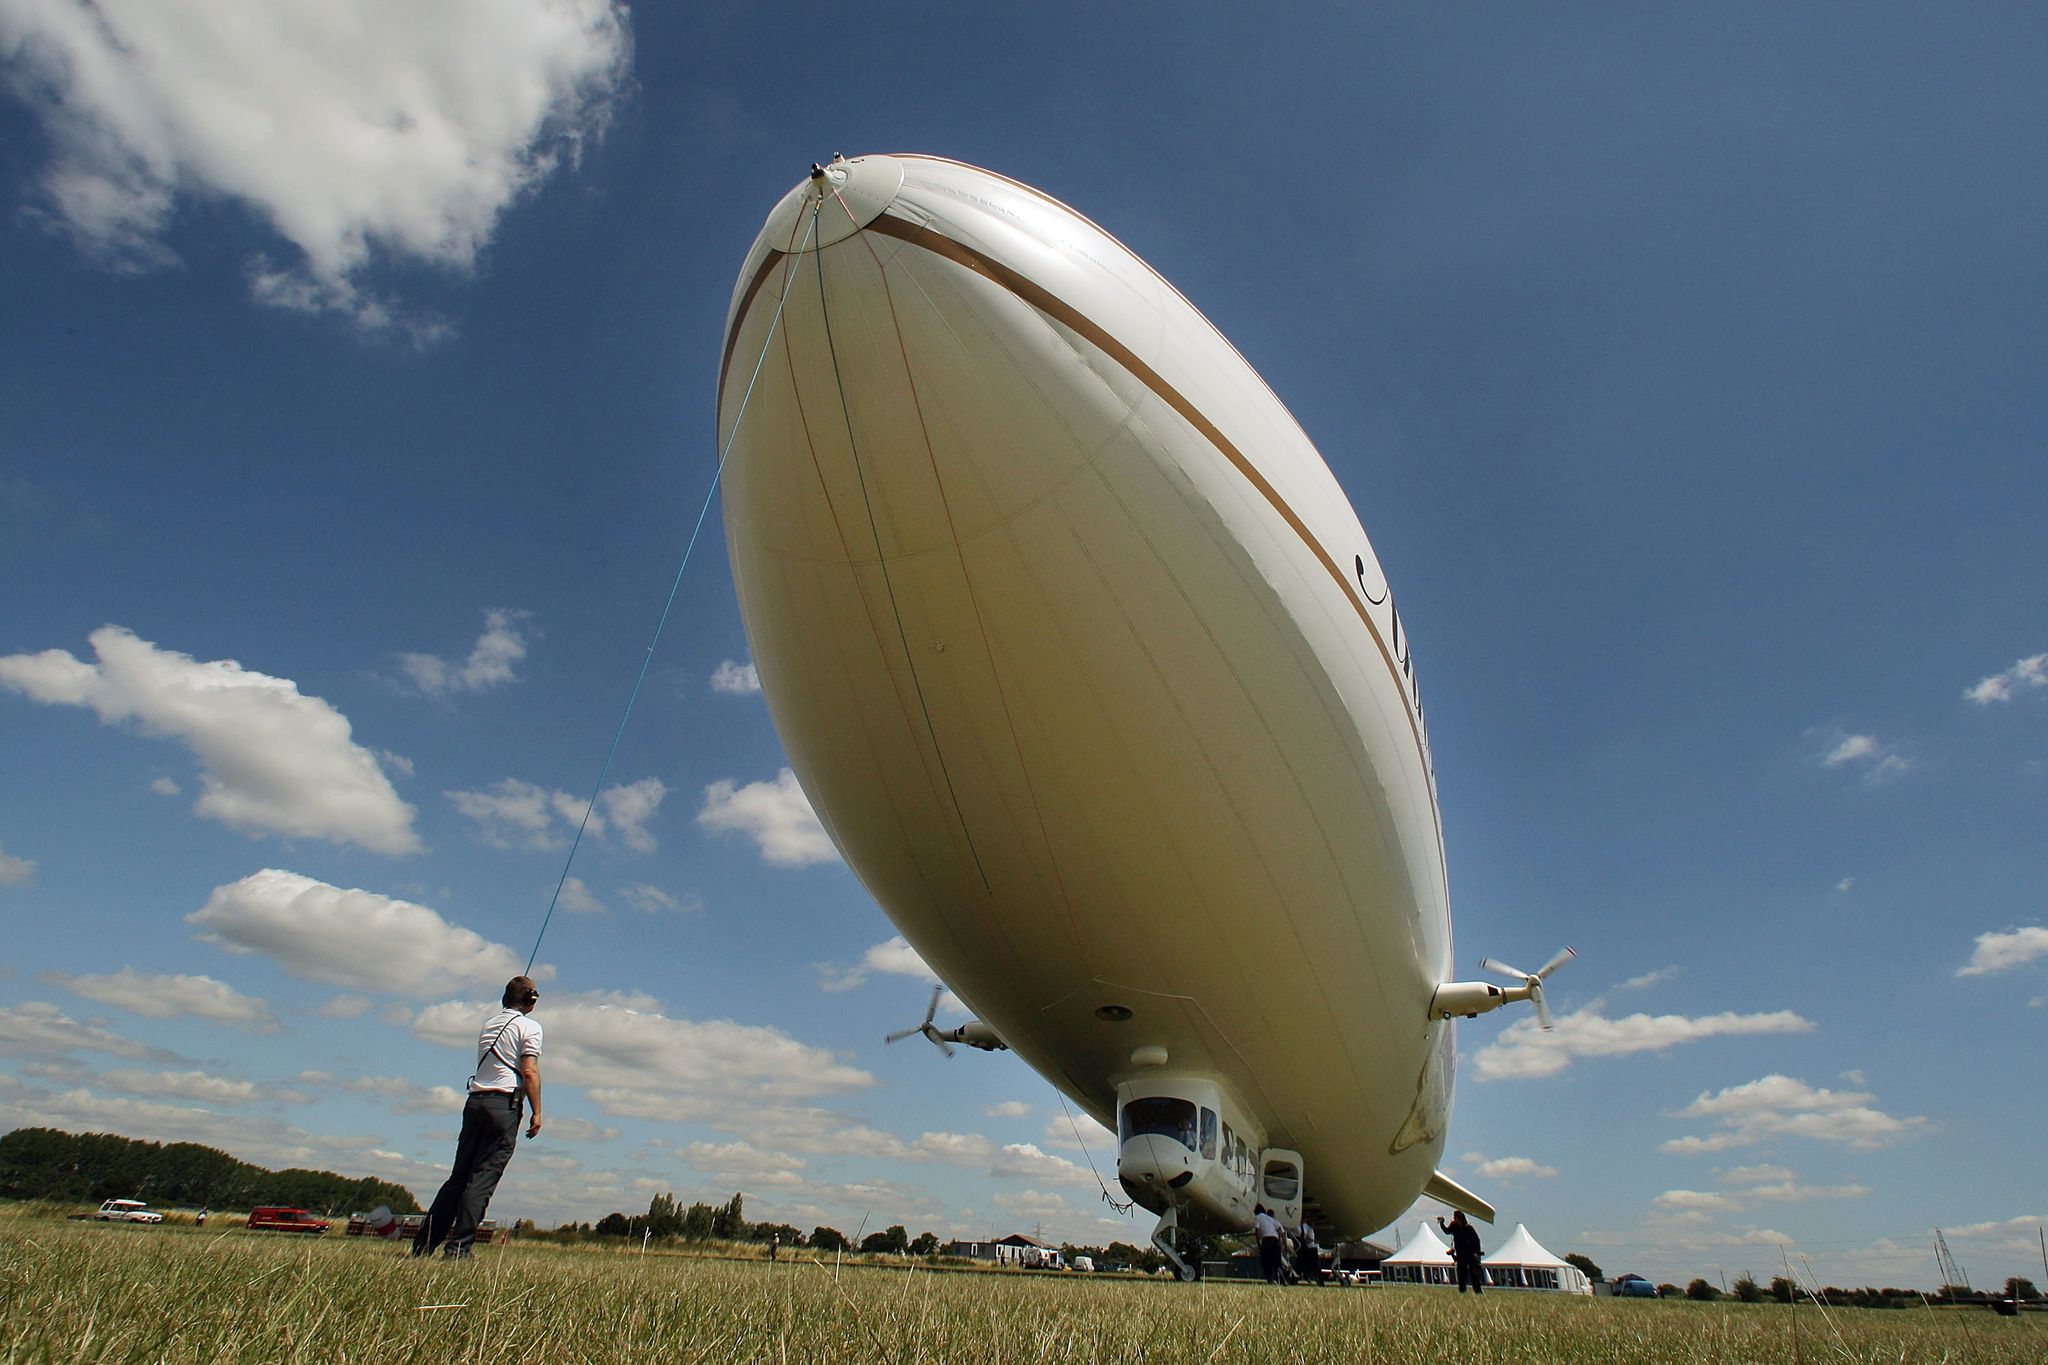 Zeppelins Return To The Skies Of London